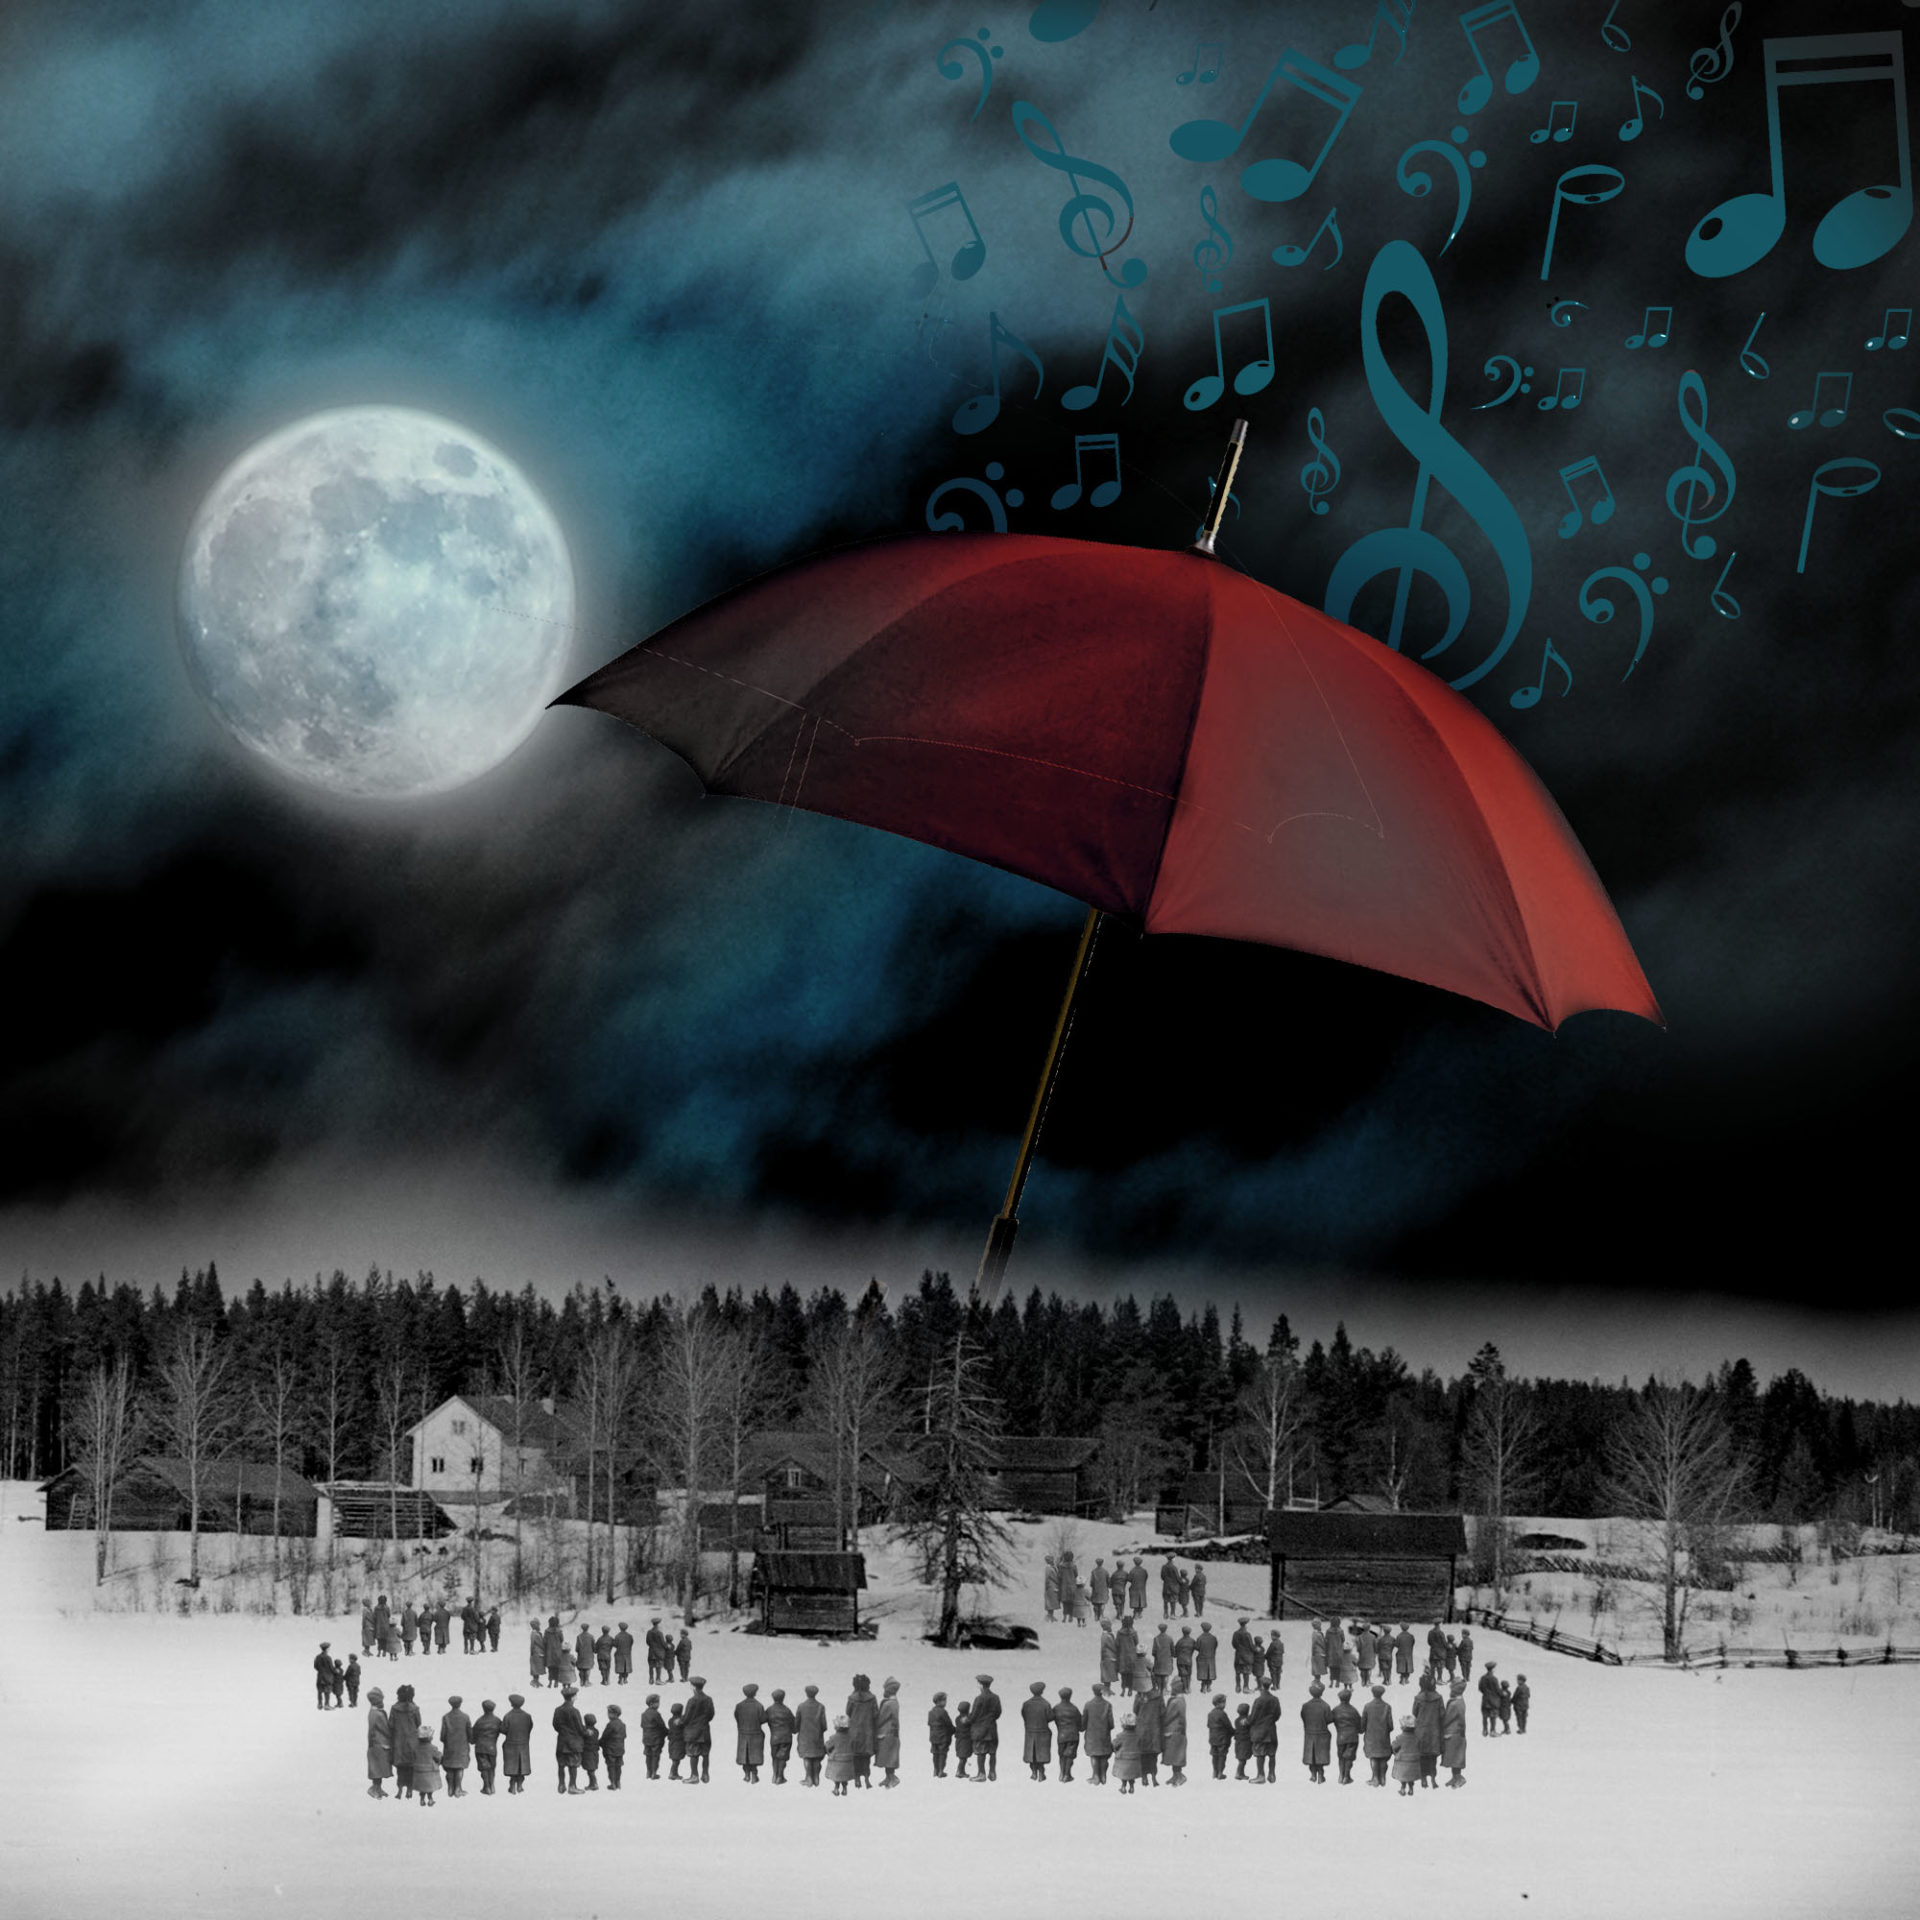 El influjo de la Luna IV: Capricho nocturno. Un paisaje nocturno con luna, y notas musicales caen del cielo con un gran paraguas y gente mirando. Loco Mundo Arte y Bohemia